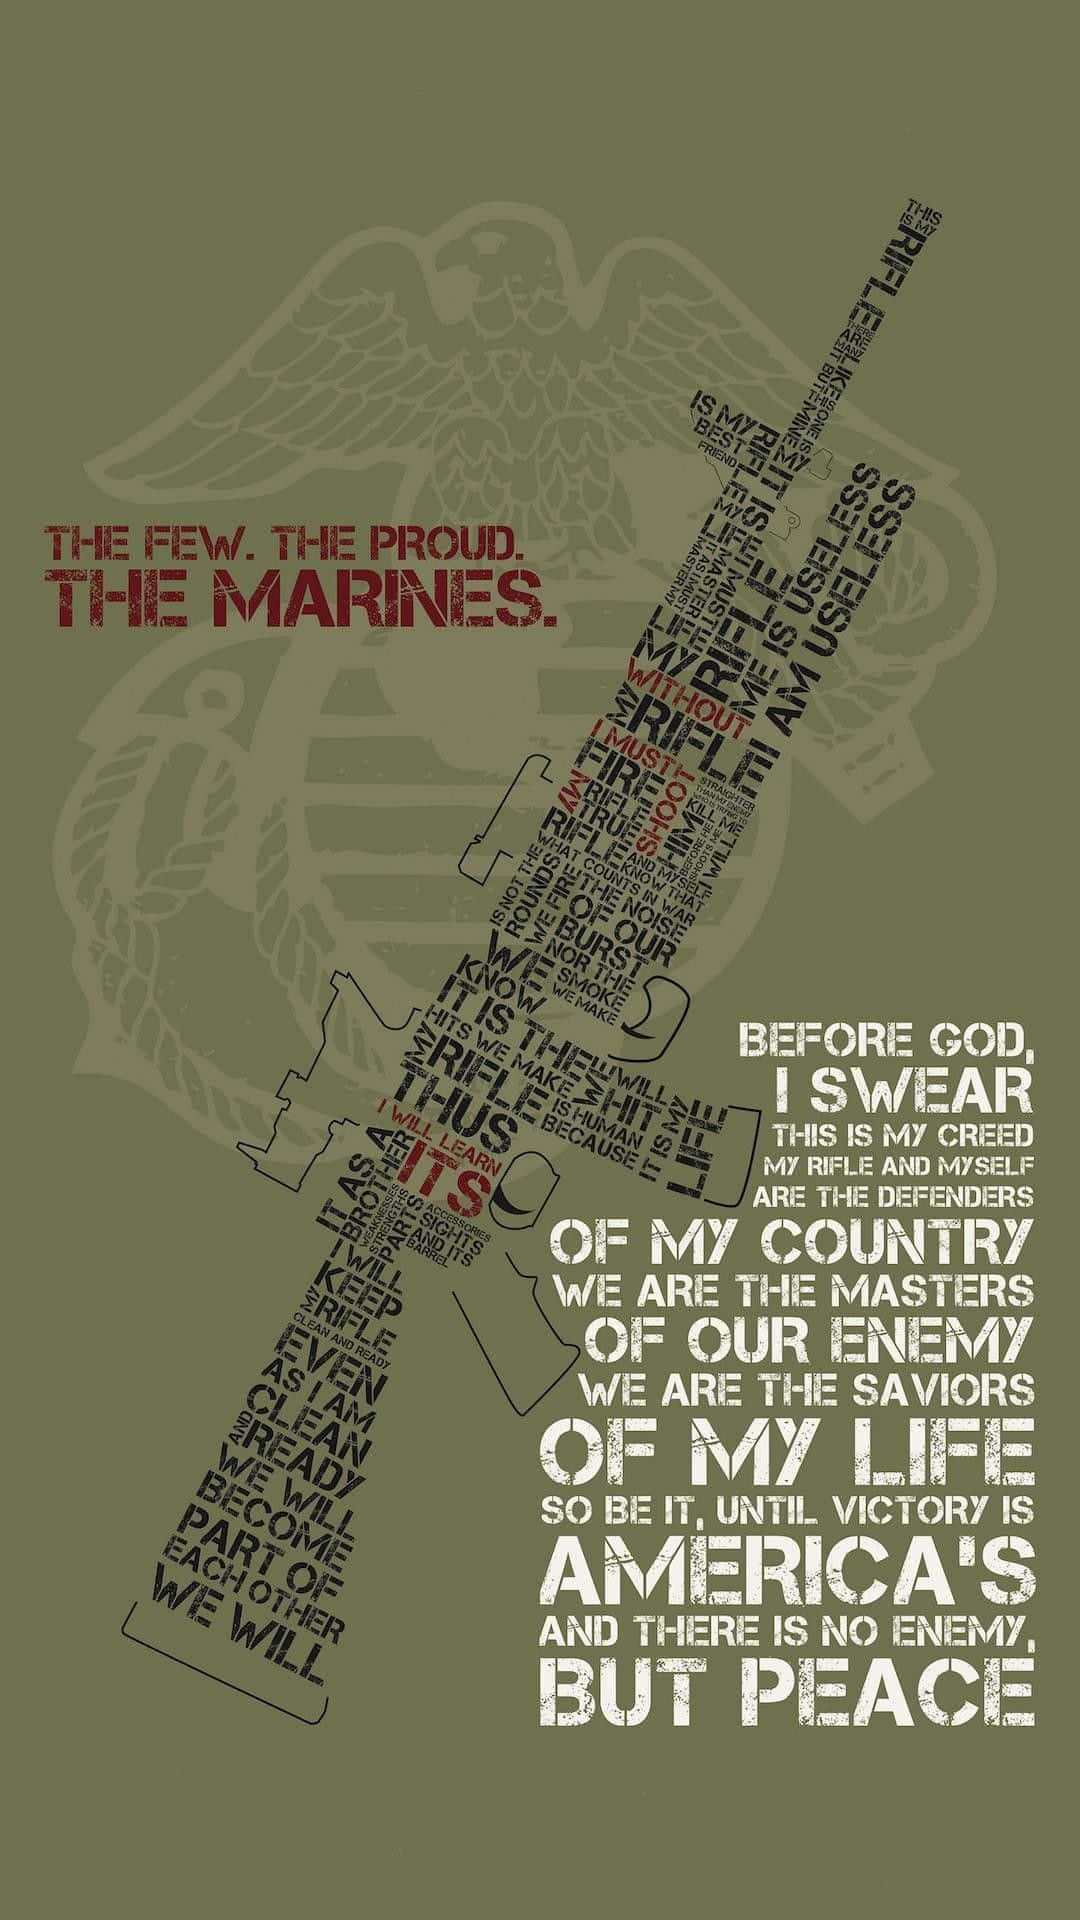 Fuerza,valentía Y Honor: Los Valores Del Cuerpo De Marines De Los Estados Unidos. Fondo de pantalla